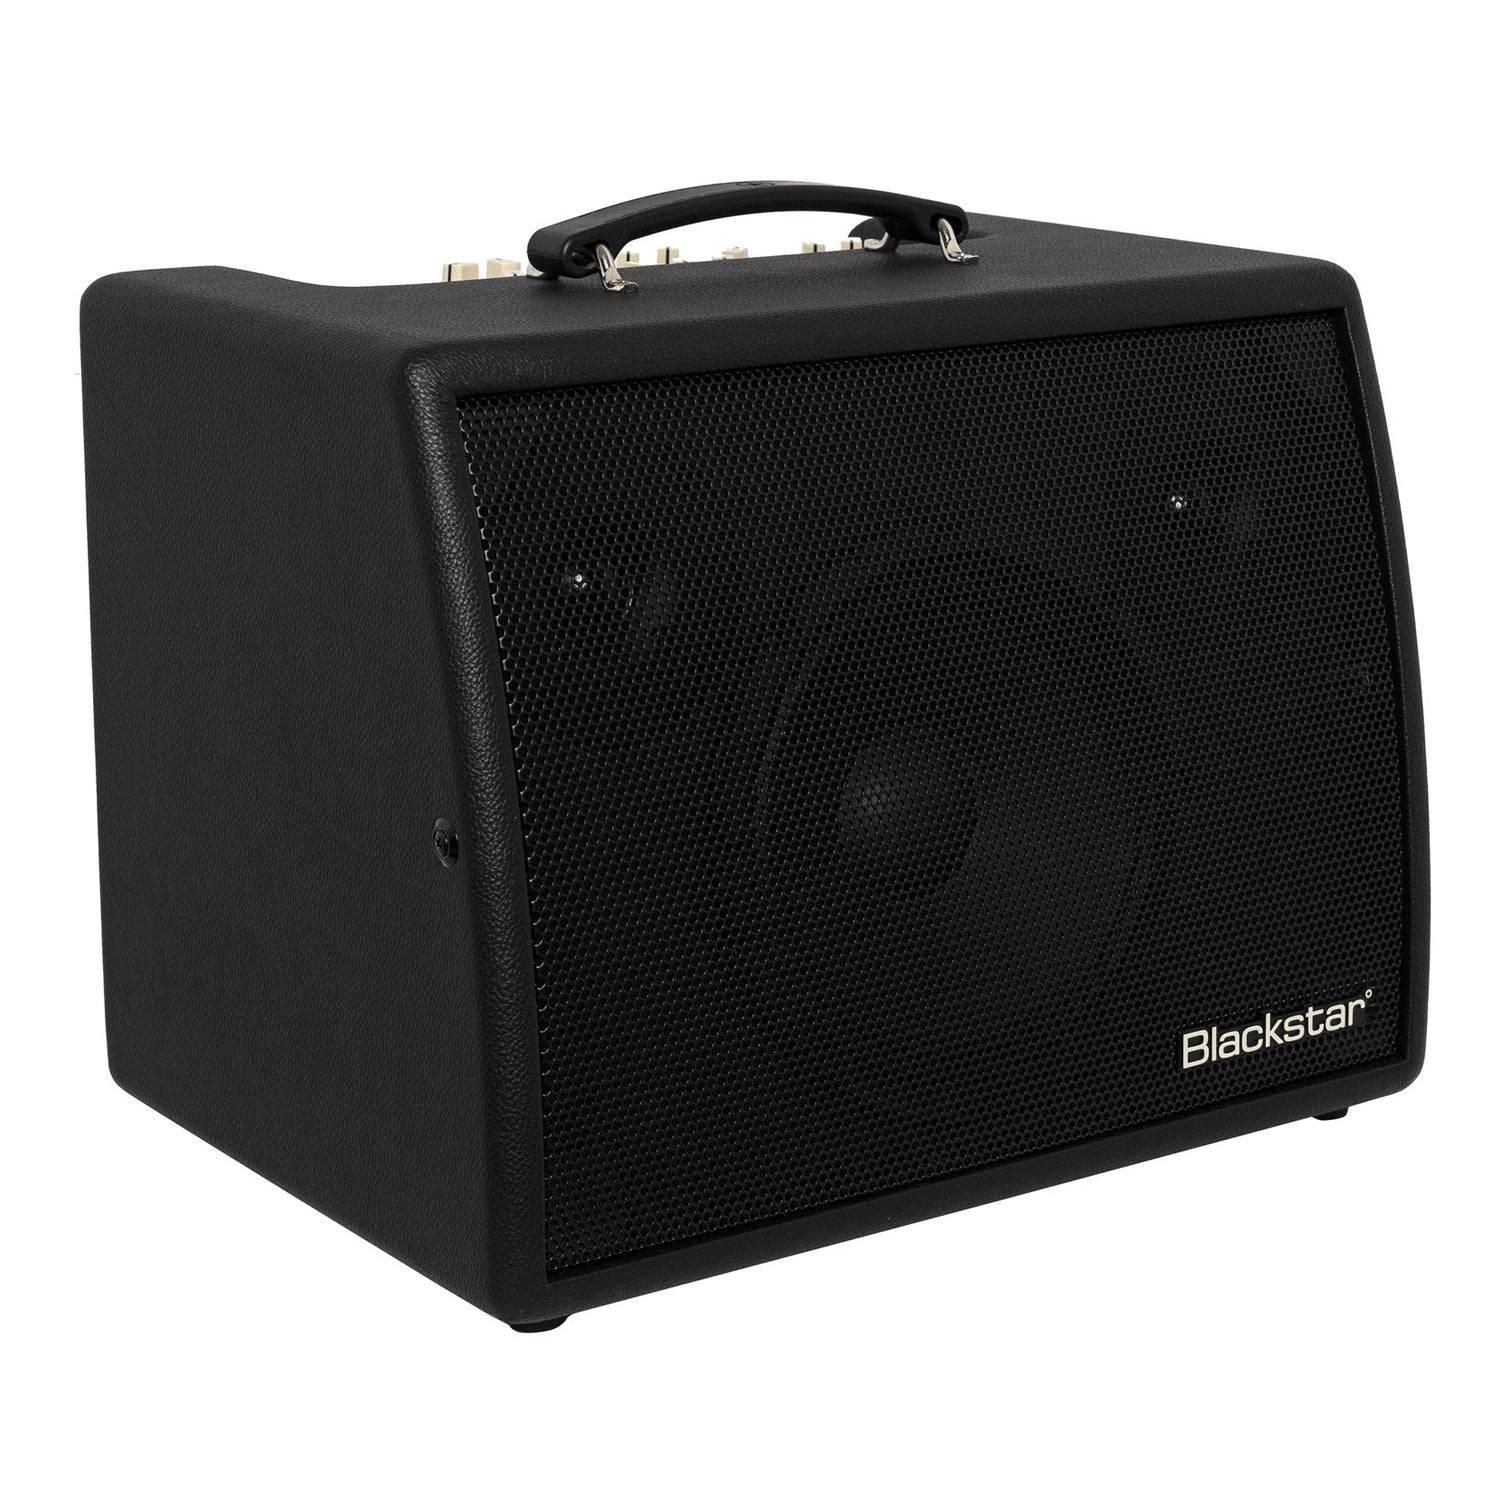 Blackstar Sonnet 120 1x8 Acoustic Combo Amplifier - Black